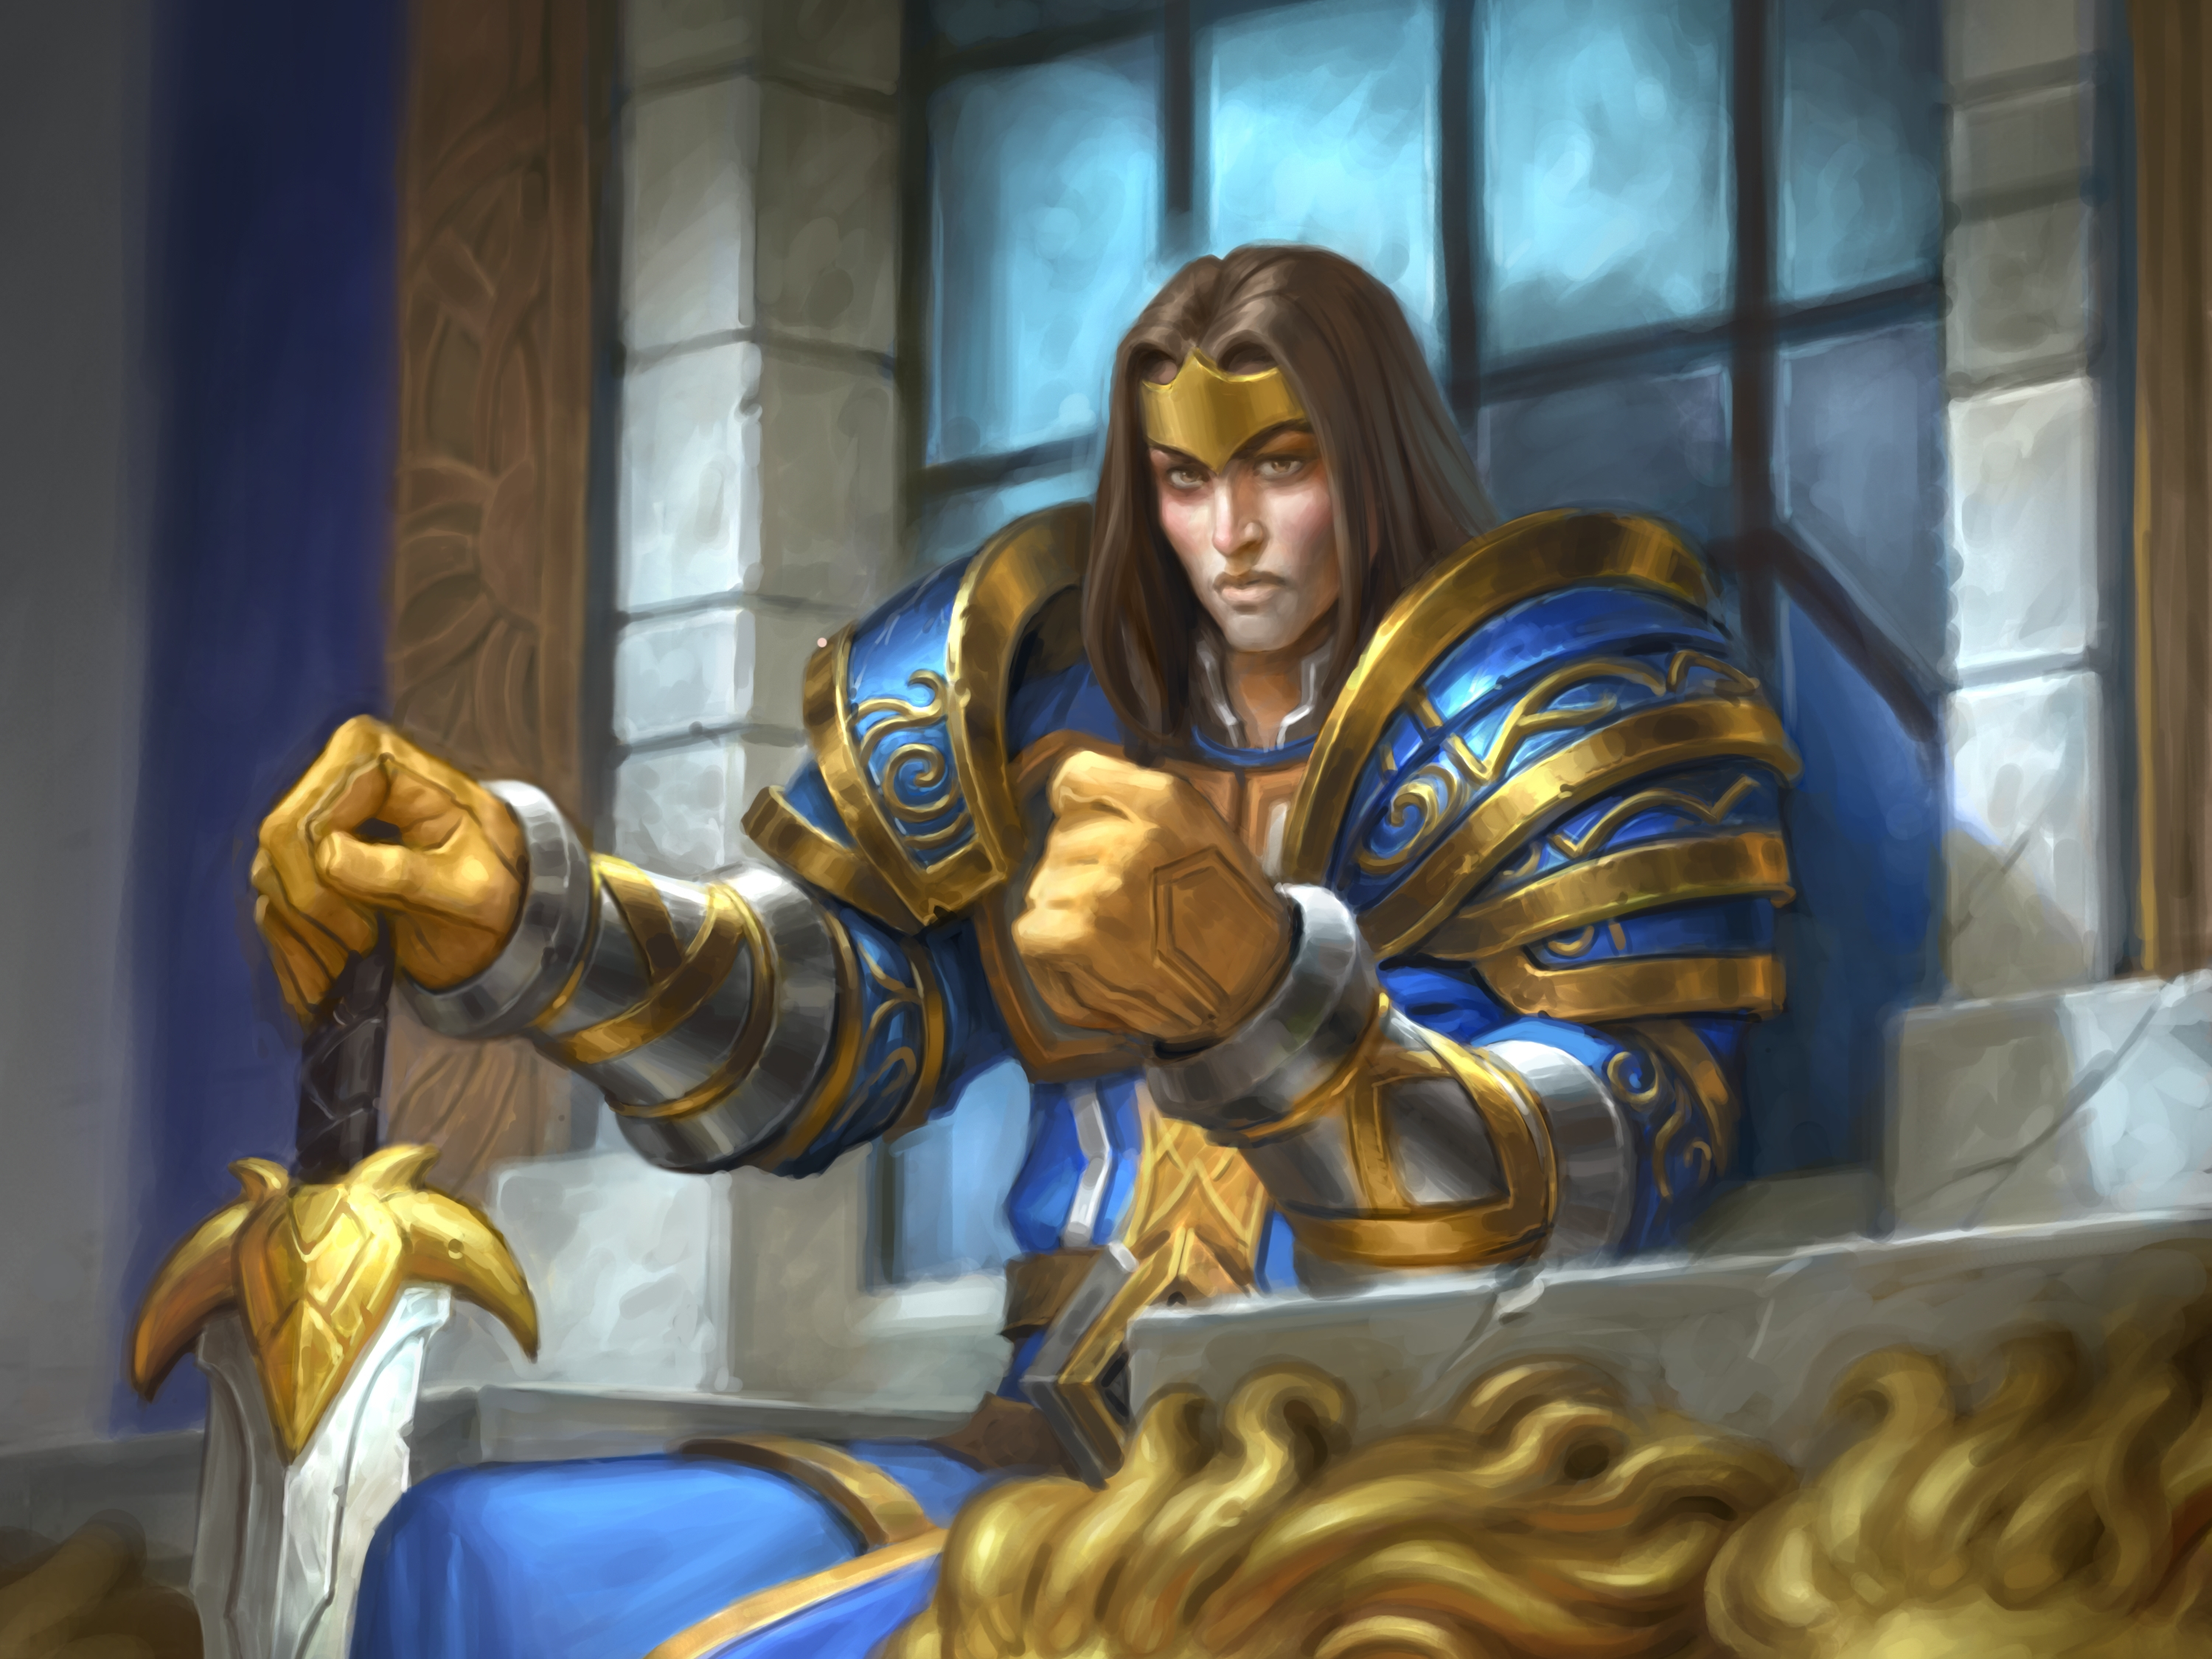 Descarga gratuita de fondo de pantalla para móvil de Warcraft, Videojuego, Hearthstone: Heroes Of Warcraft.